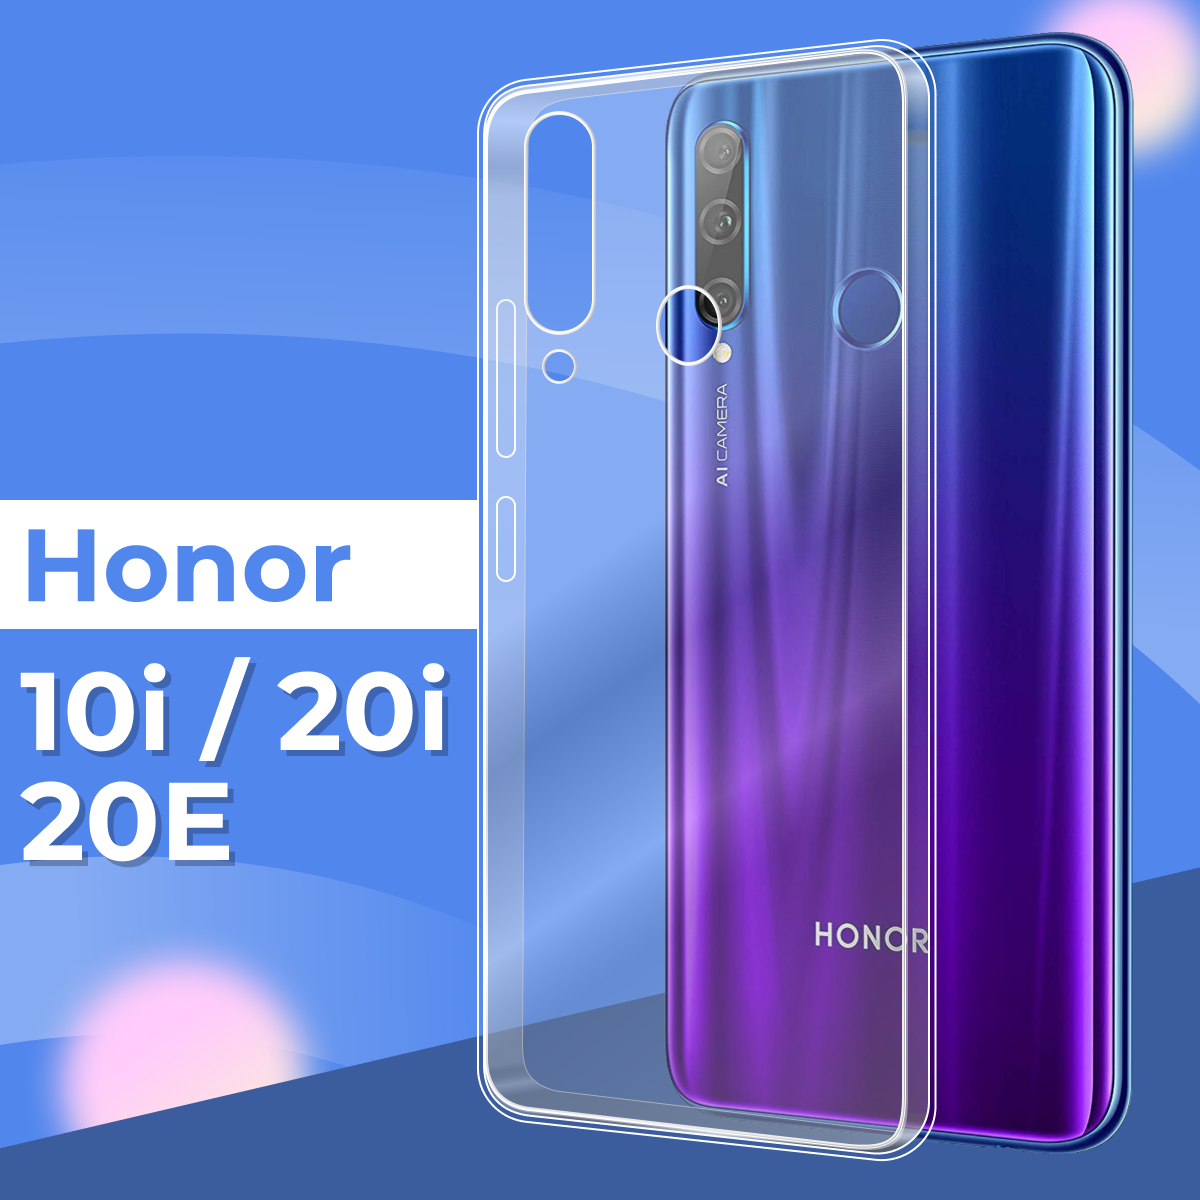 Ультратонкий силиконовый чехол для телефона Honor 10i Honor 20e и Honor 20i / Прозрачный защитный чехол для Хонор 10 Хонор 20е и Хонор 20 ай